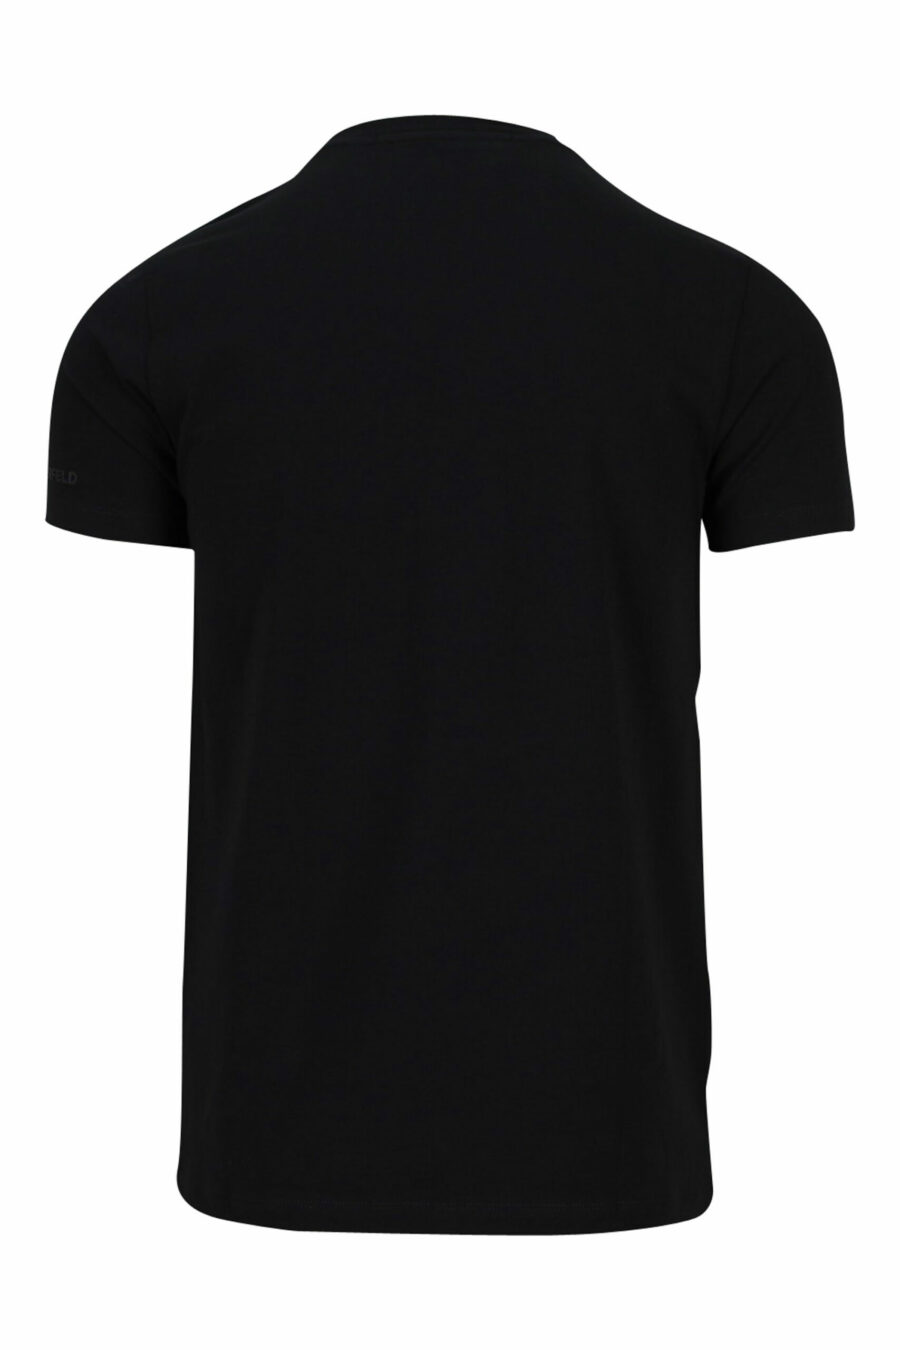 T-shirt noir avec maxilogo en caoutchouc monochrome - 4062226401425 5 scaled